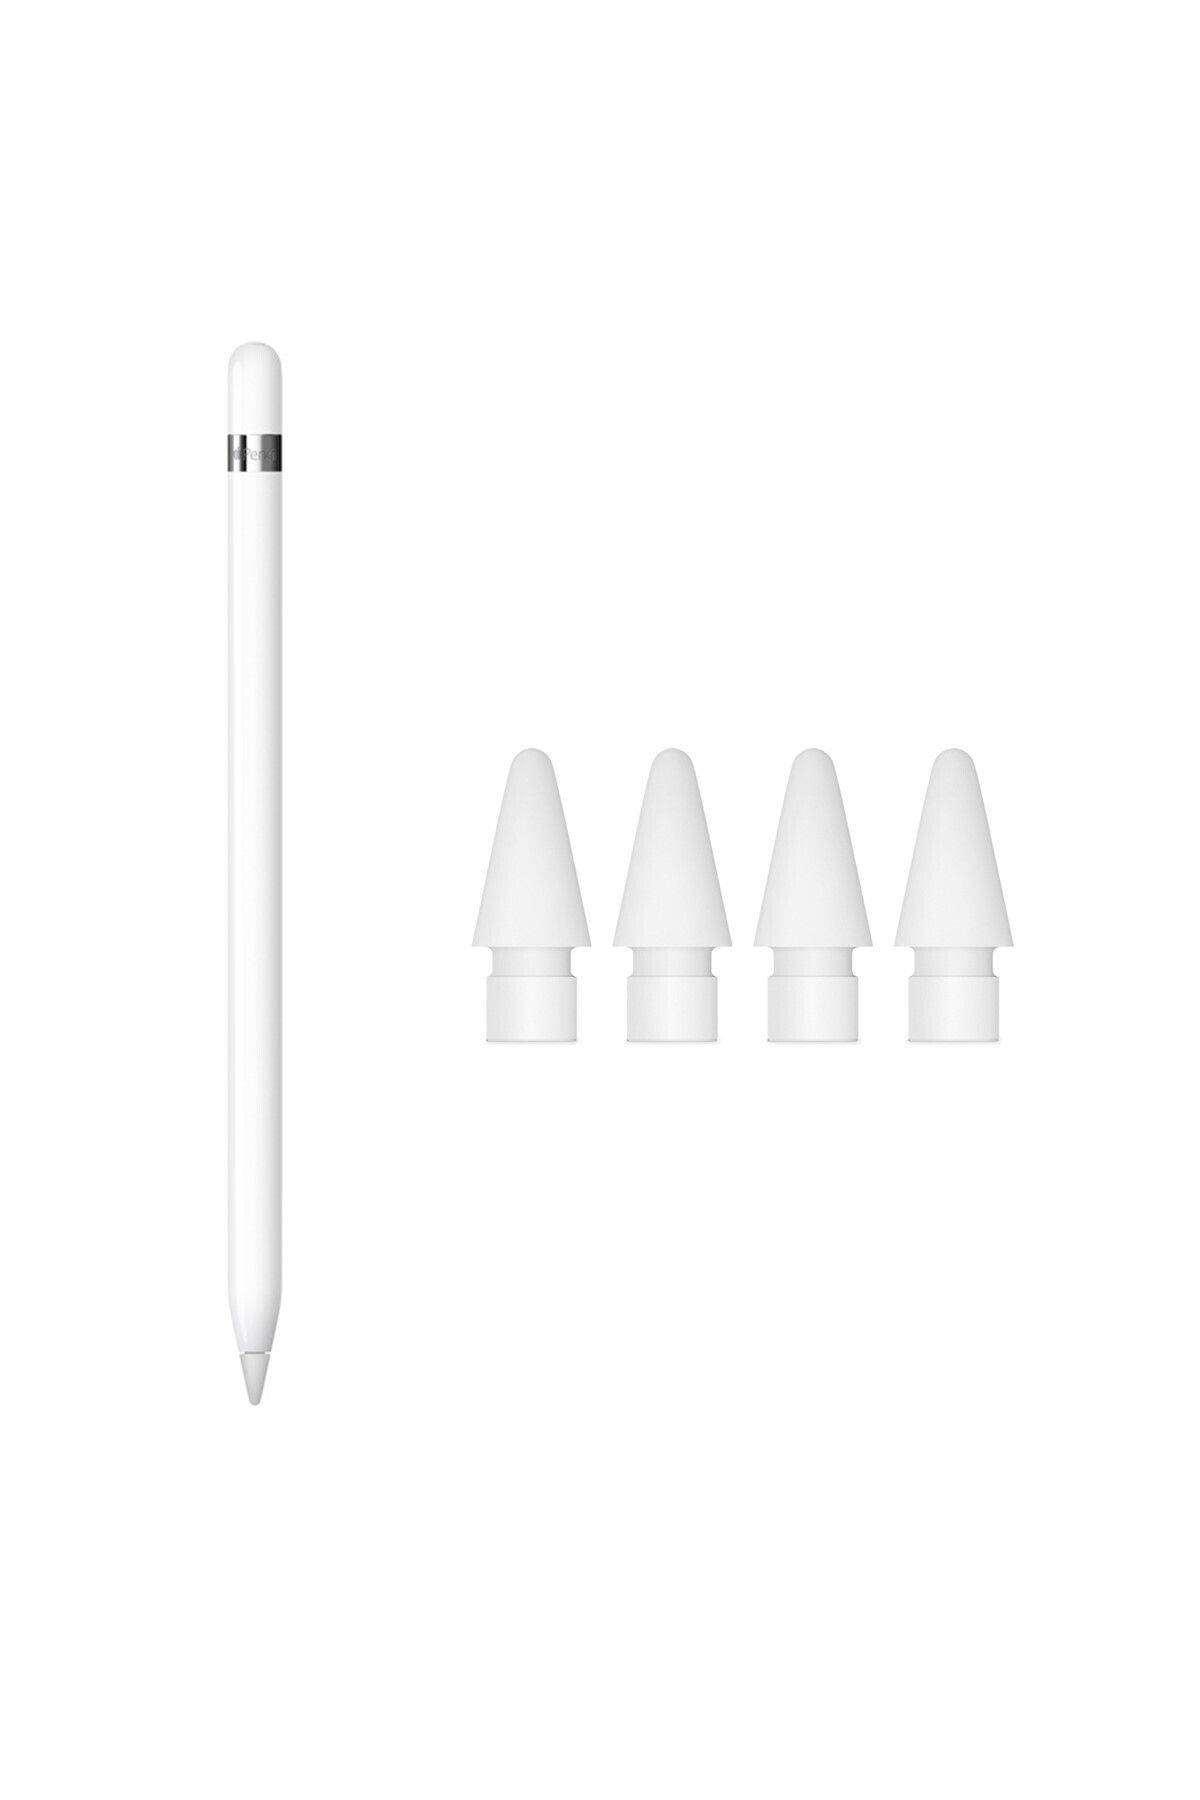 Apple Pencil 1.nesil Ve 4'lü Paket Pencil Uçları ( Türkiye Garantili)